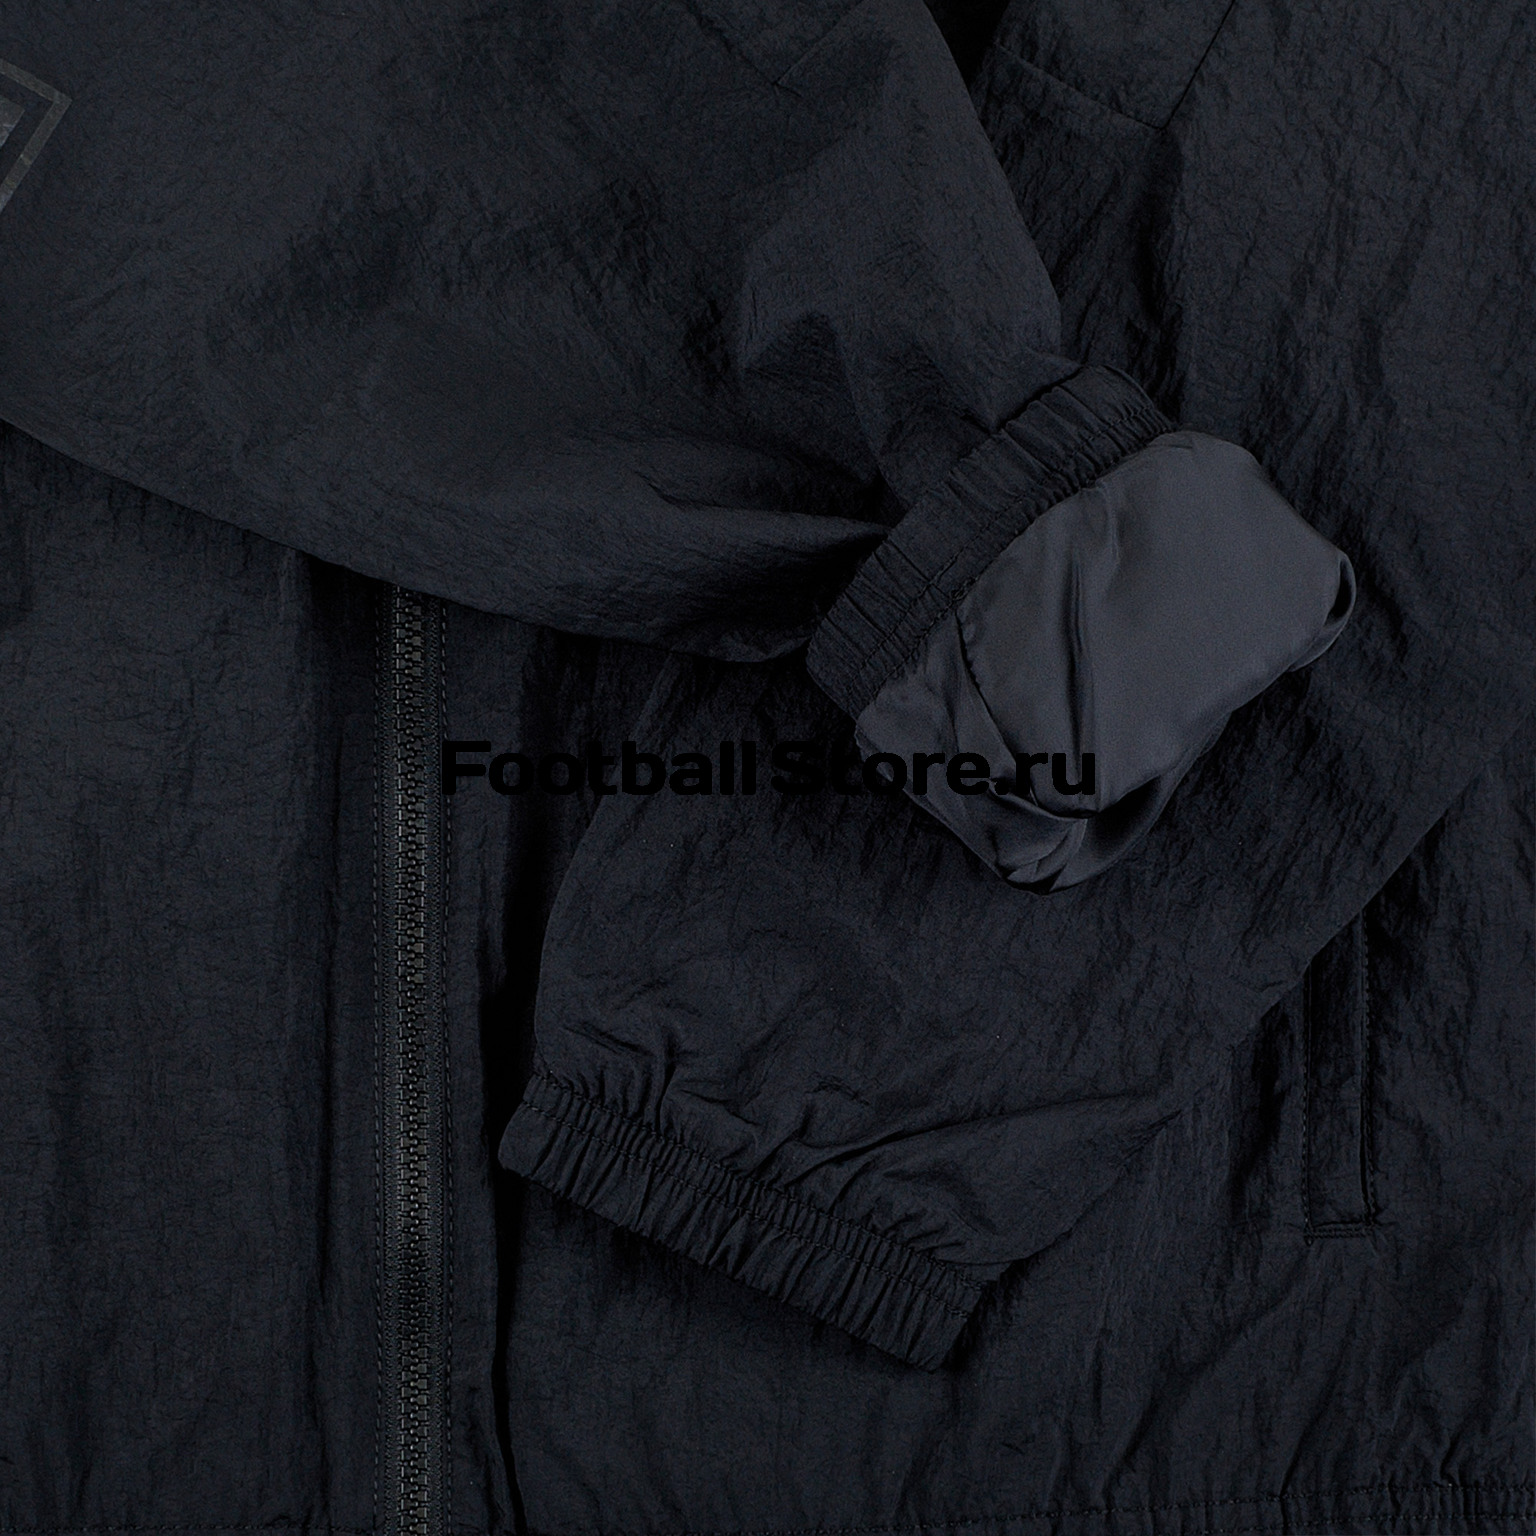 Куртка Nike SC Woven Jacket CT2531-010